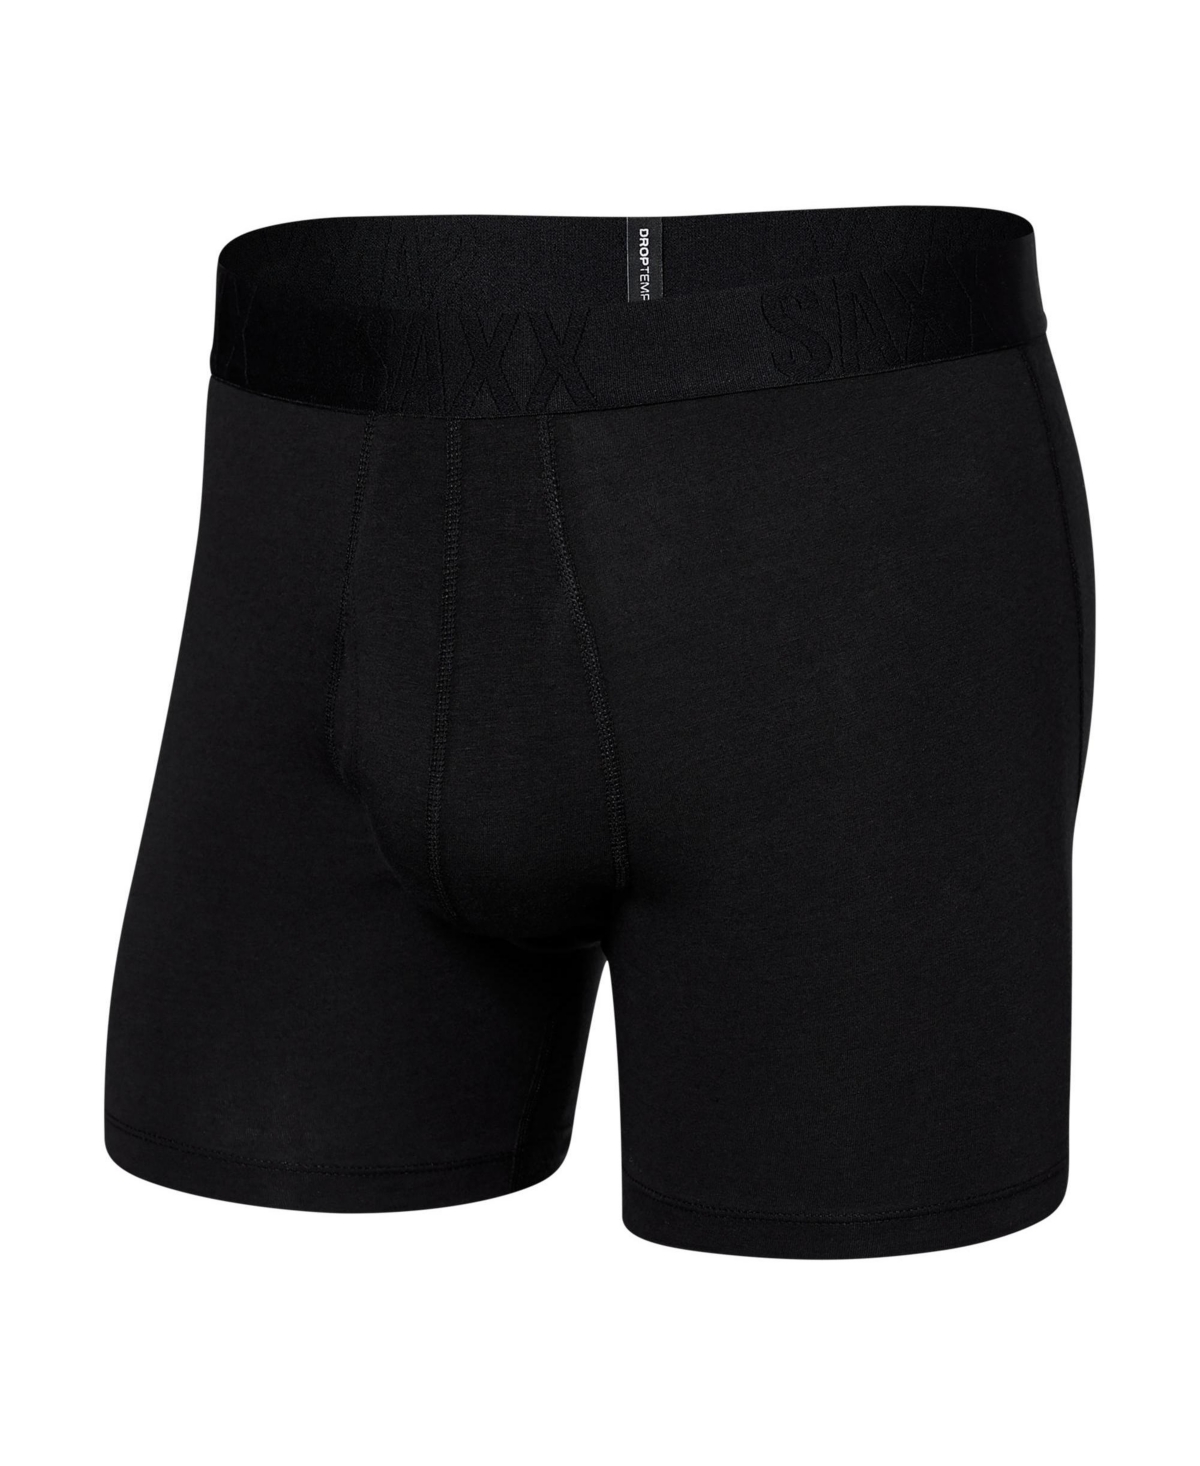 Shop Saxx Men's Droptemp Cooling Cotton Slim Fit Boxer Briefs In Black